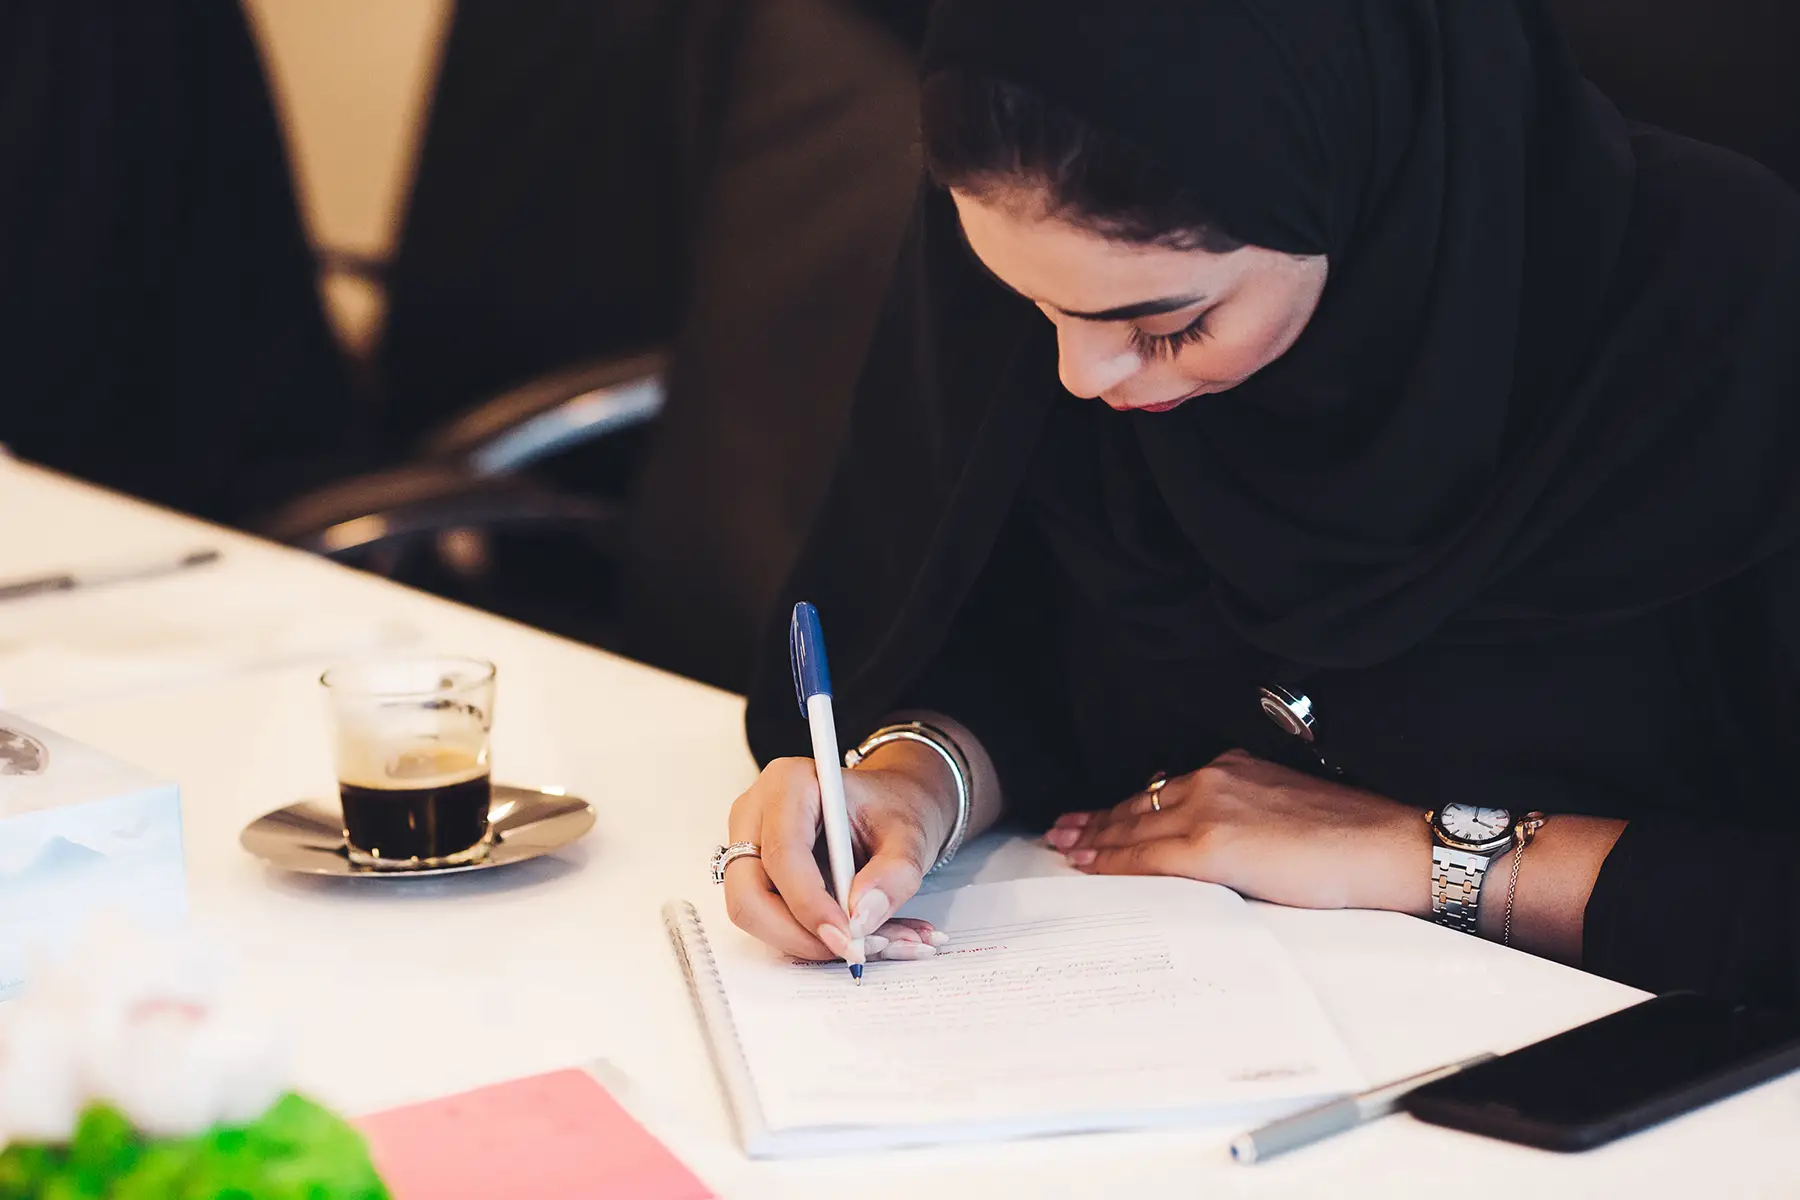 Saudi woman working in an office